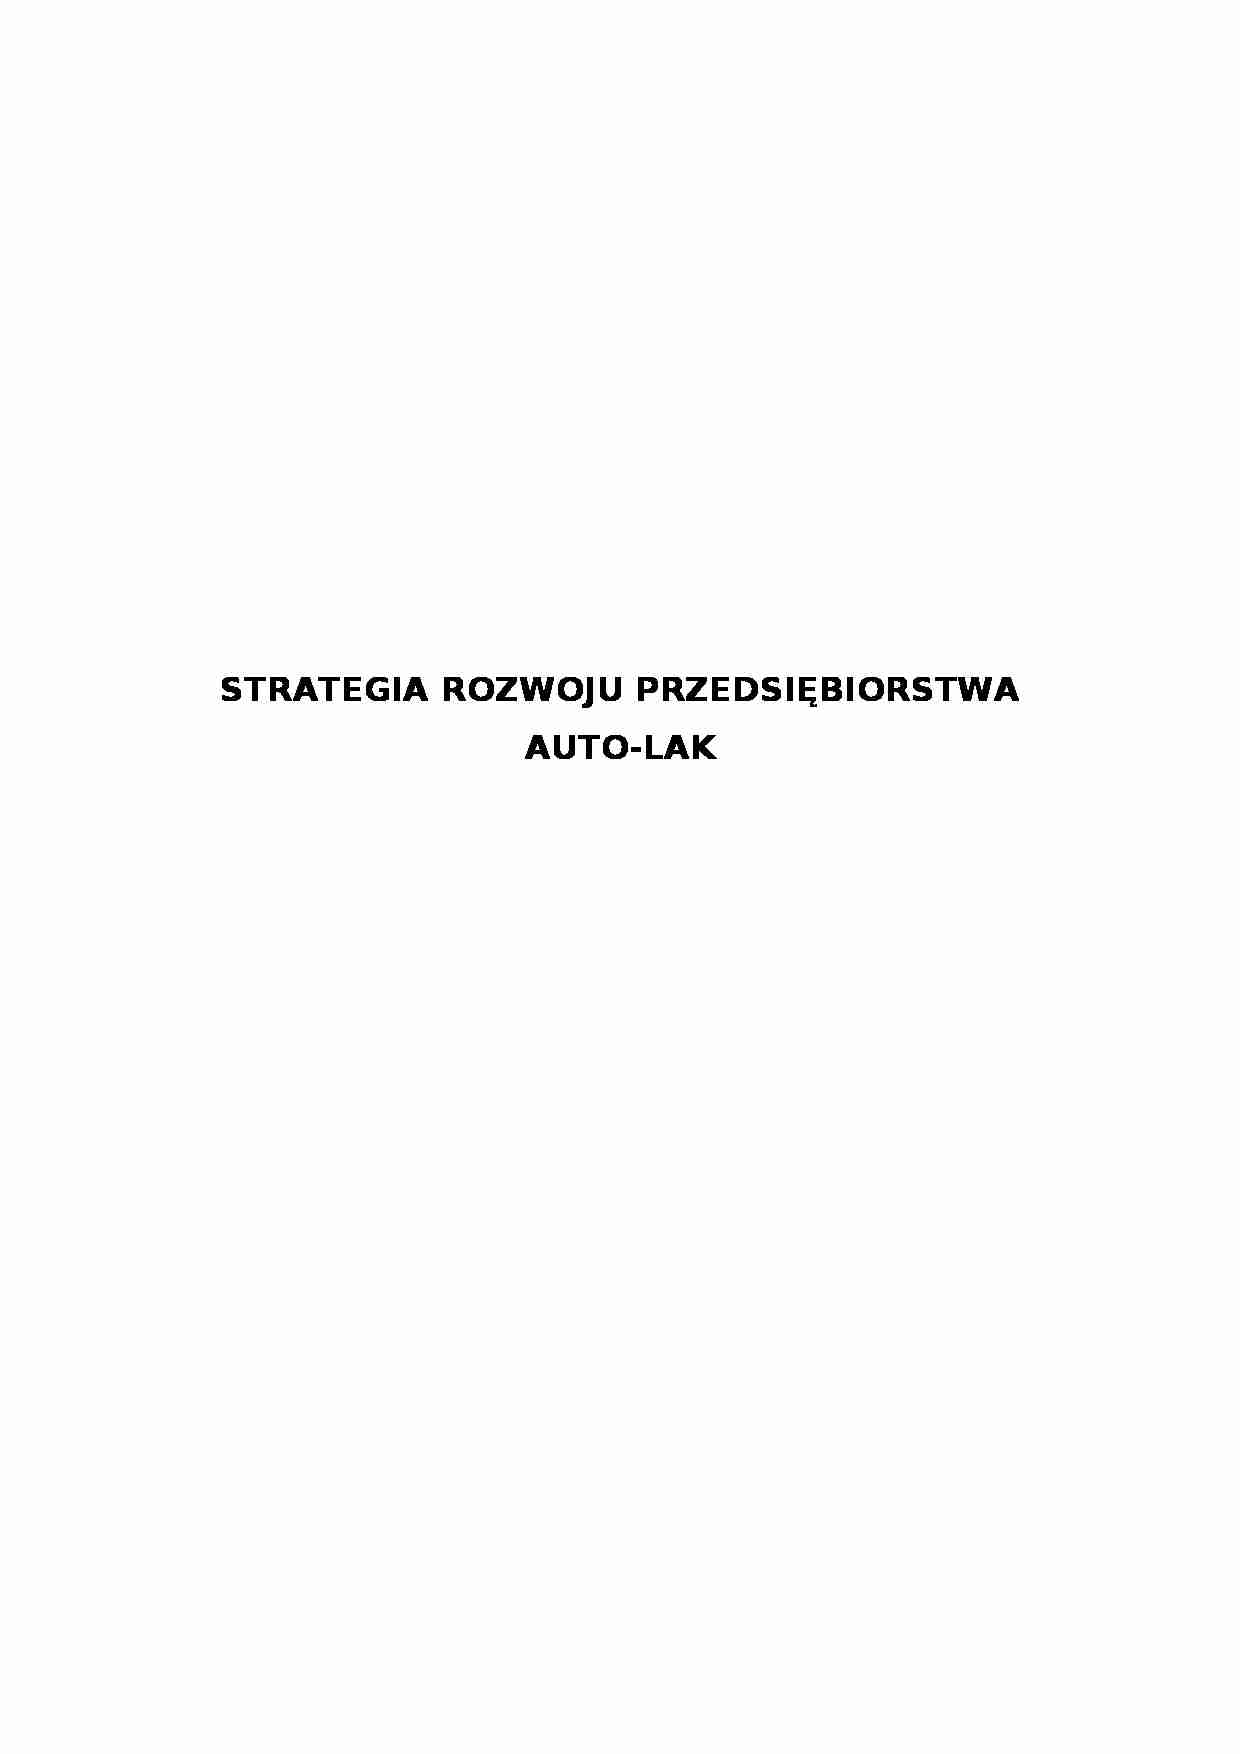 Strategia rozwoju przedsiębiorstwa Auto Lak (12 stron).doc - strona 1